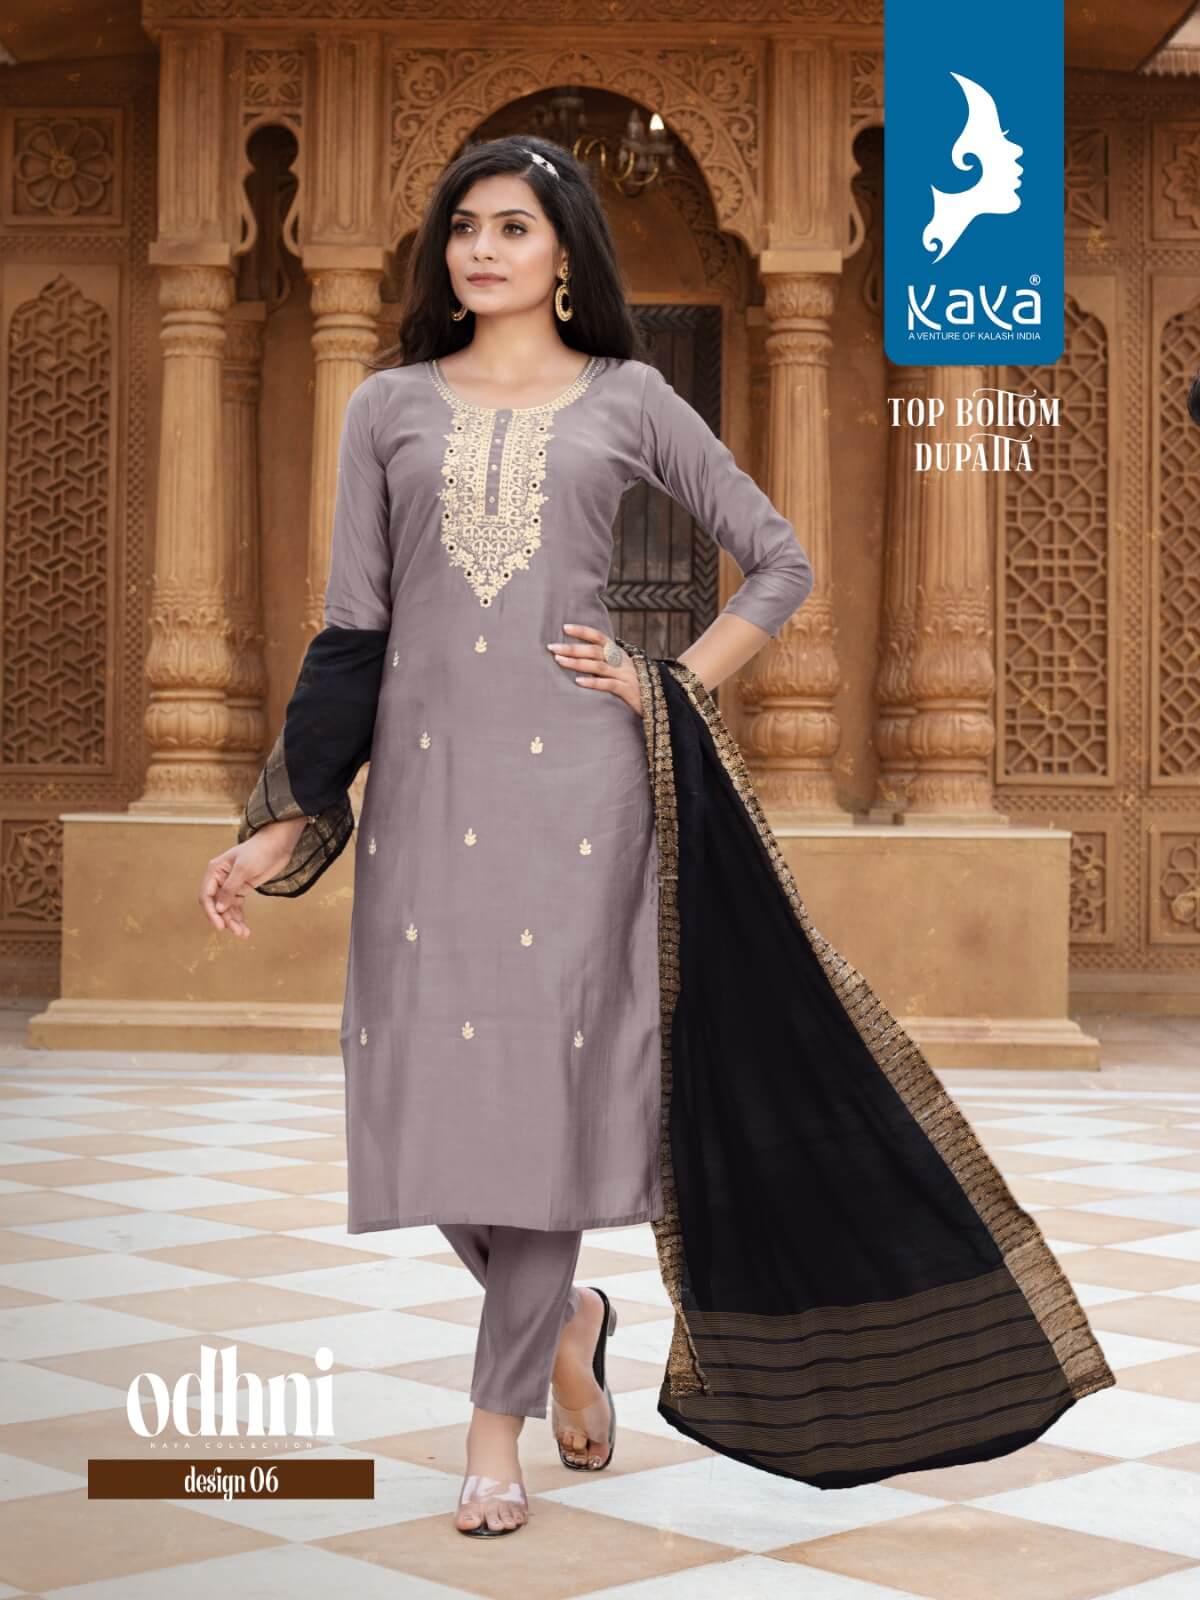 Kaya Odhani Designer Wedding Party Salwar Suits Catalog collection 8